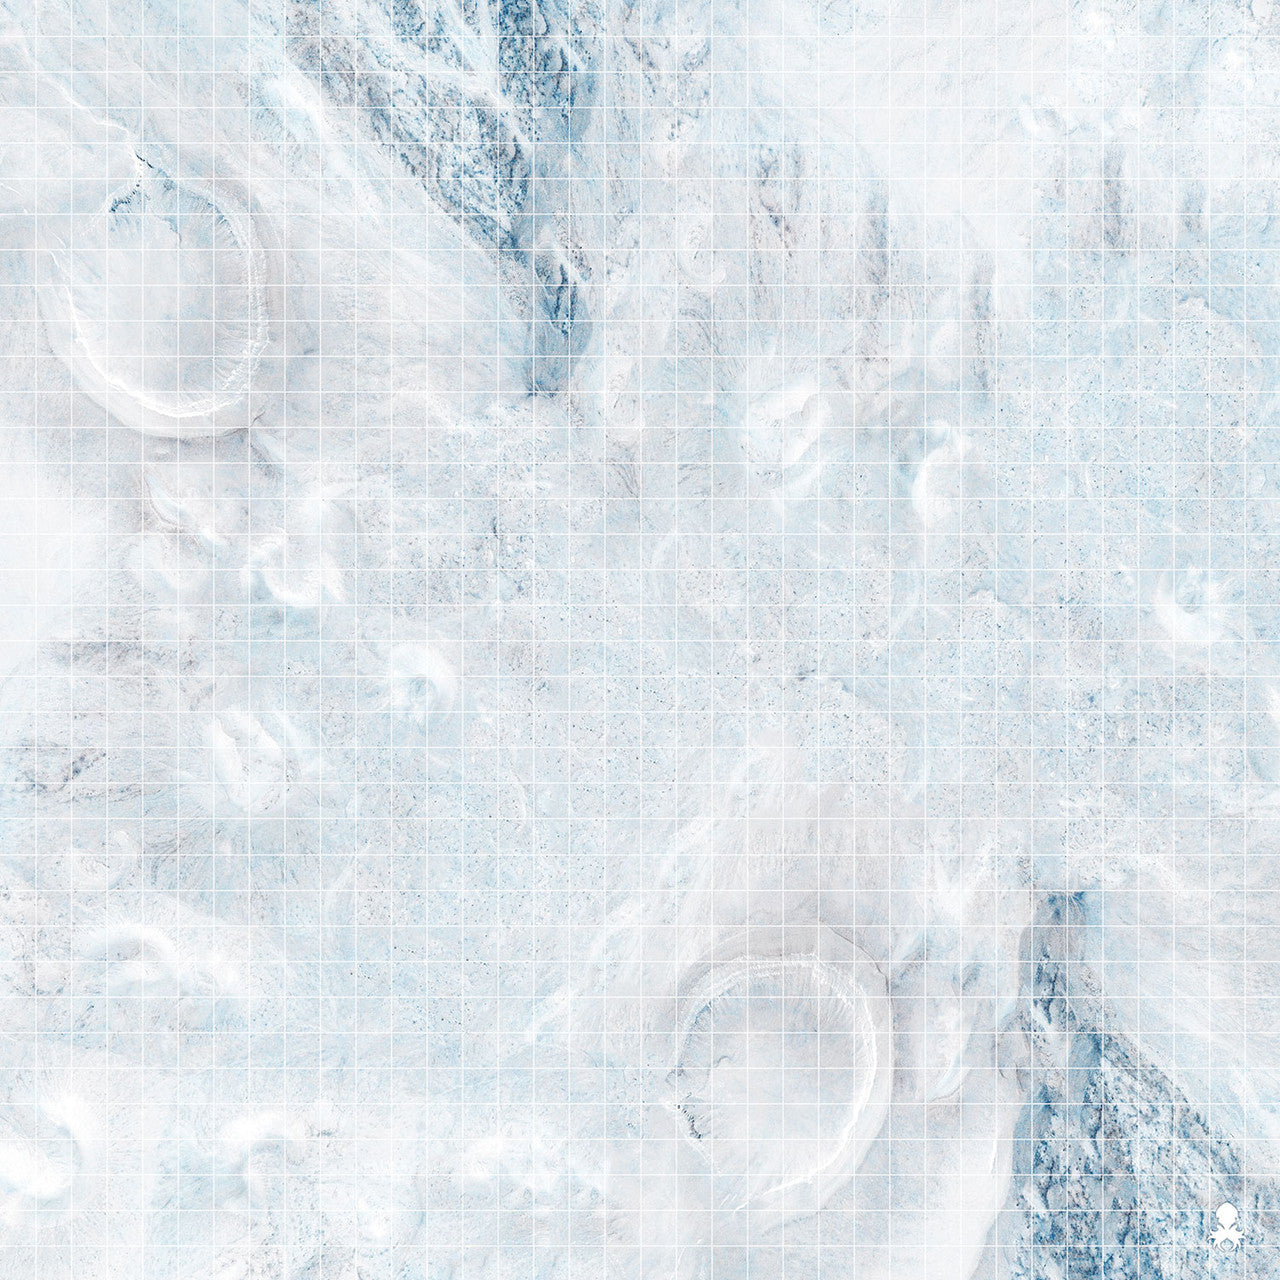 Kraken Dice RPG Encounter Map Quick Mat- Frozen Snow Field 36"x36"